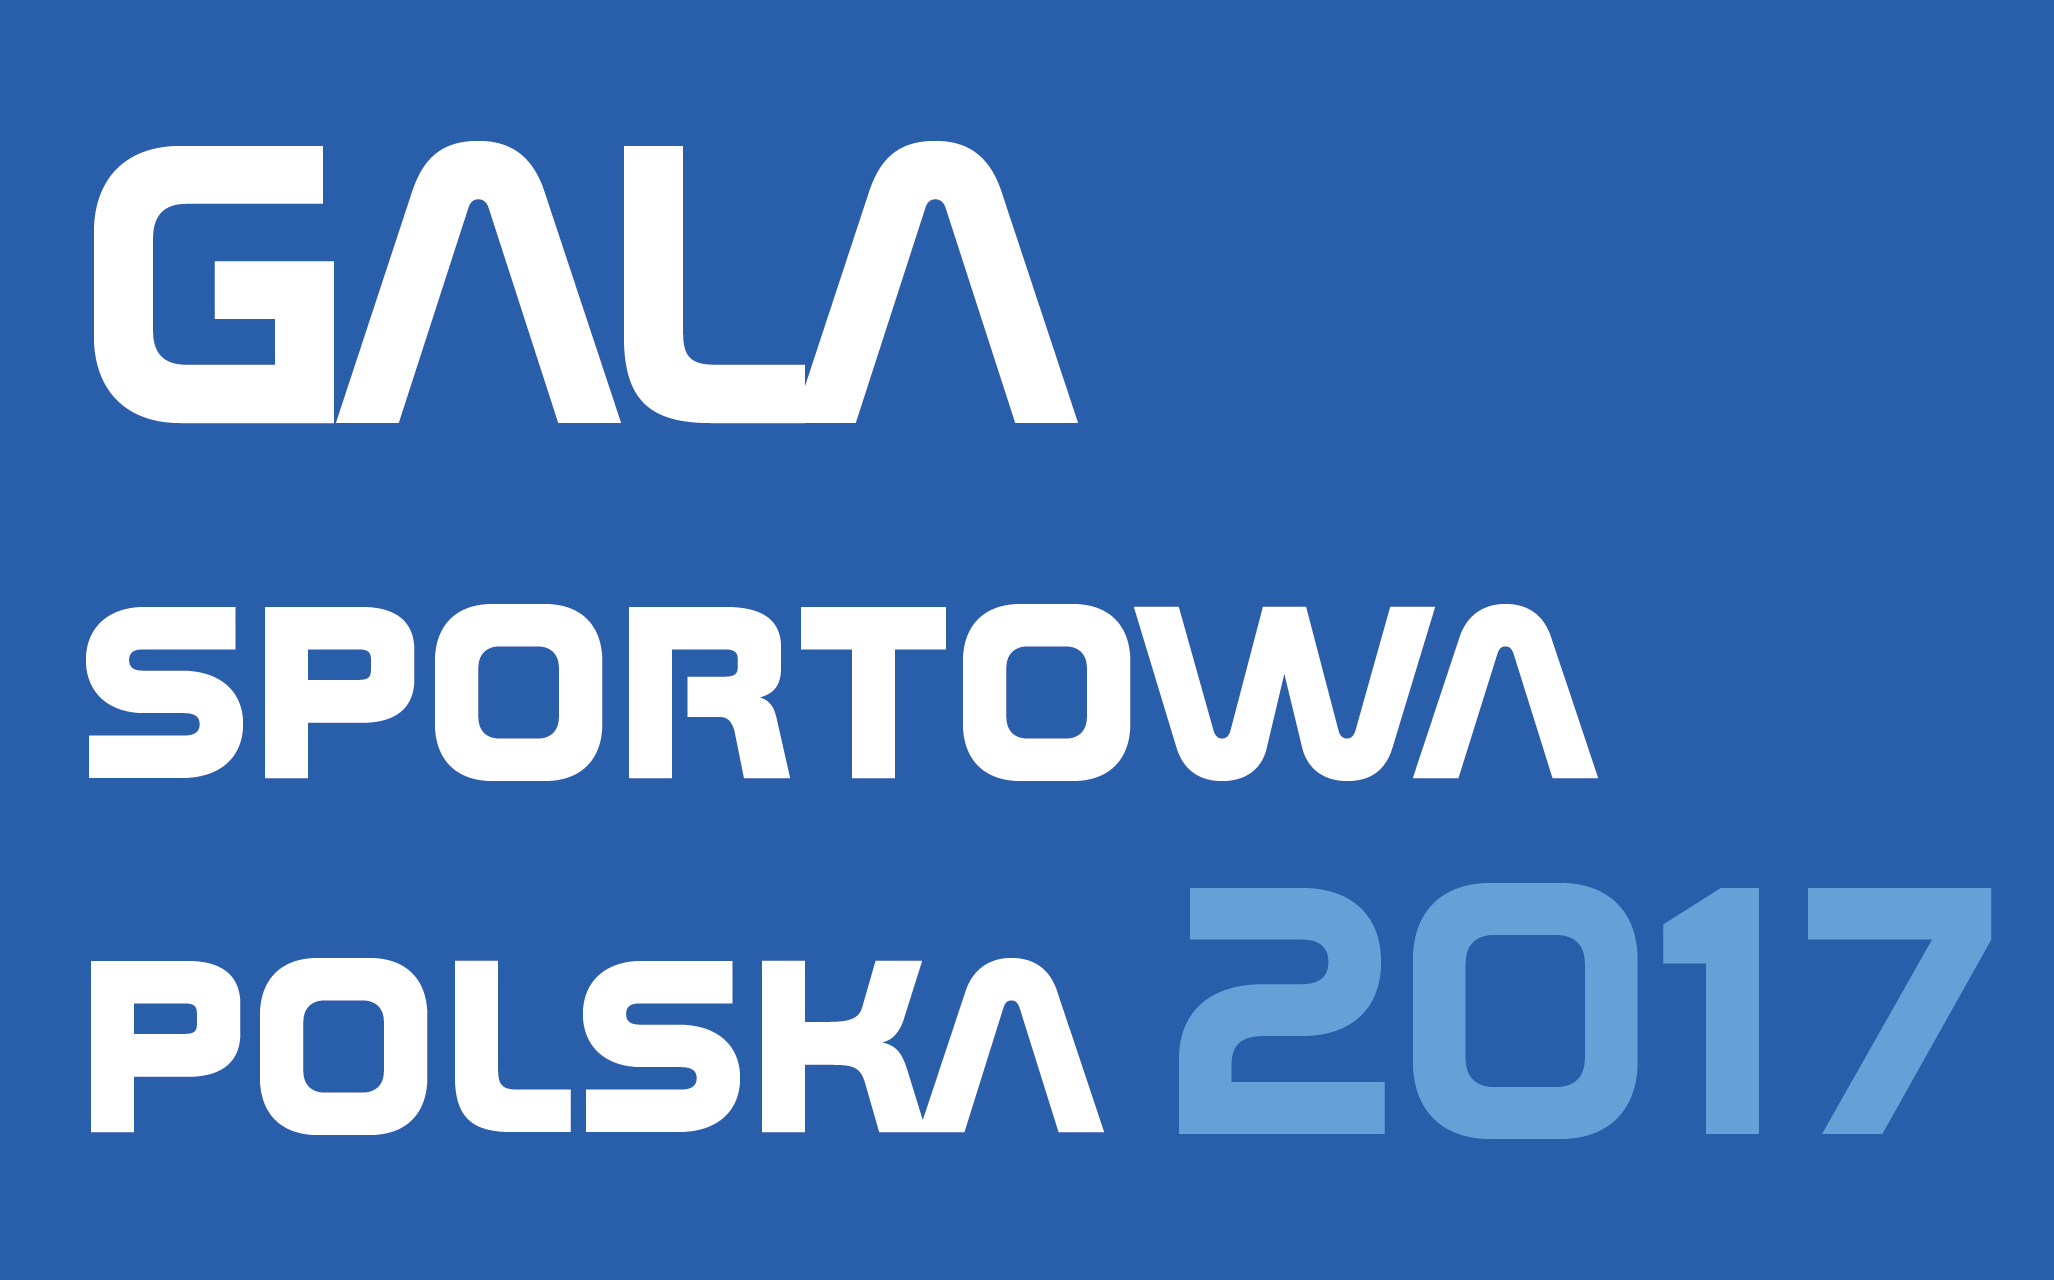 GALA SPORTOWA POLSKA 2017